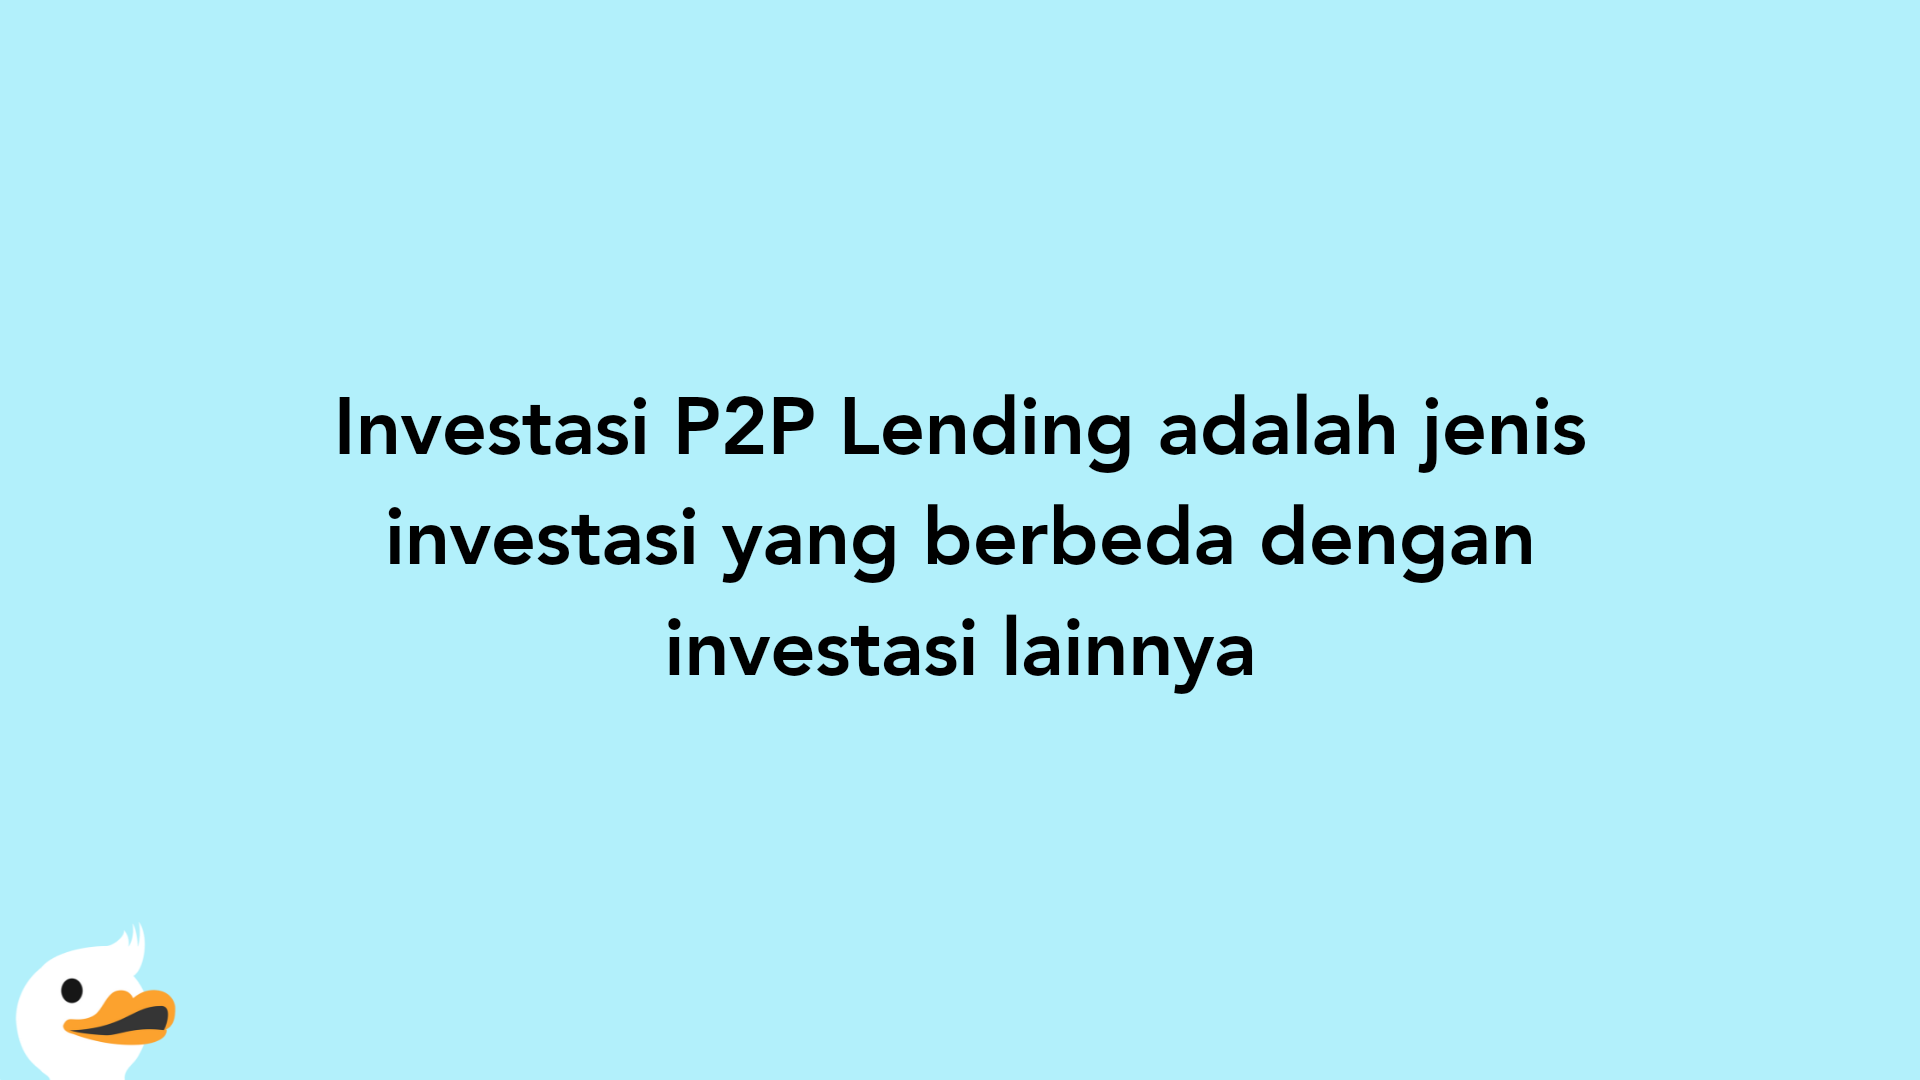 Investasi P2P Lending adalah jenis investasi yang berbeda dengan investasi lainnya